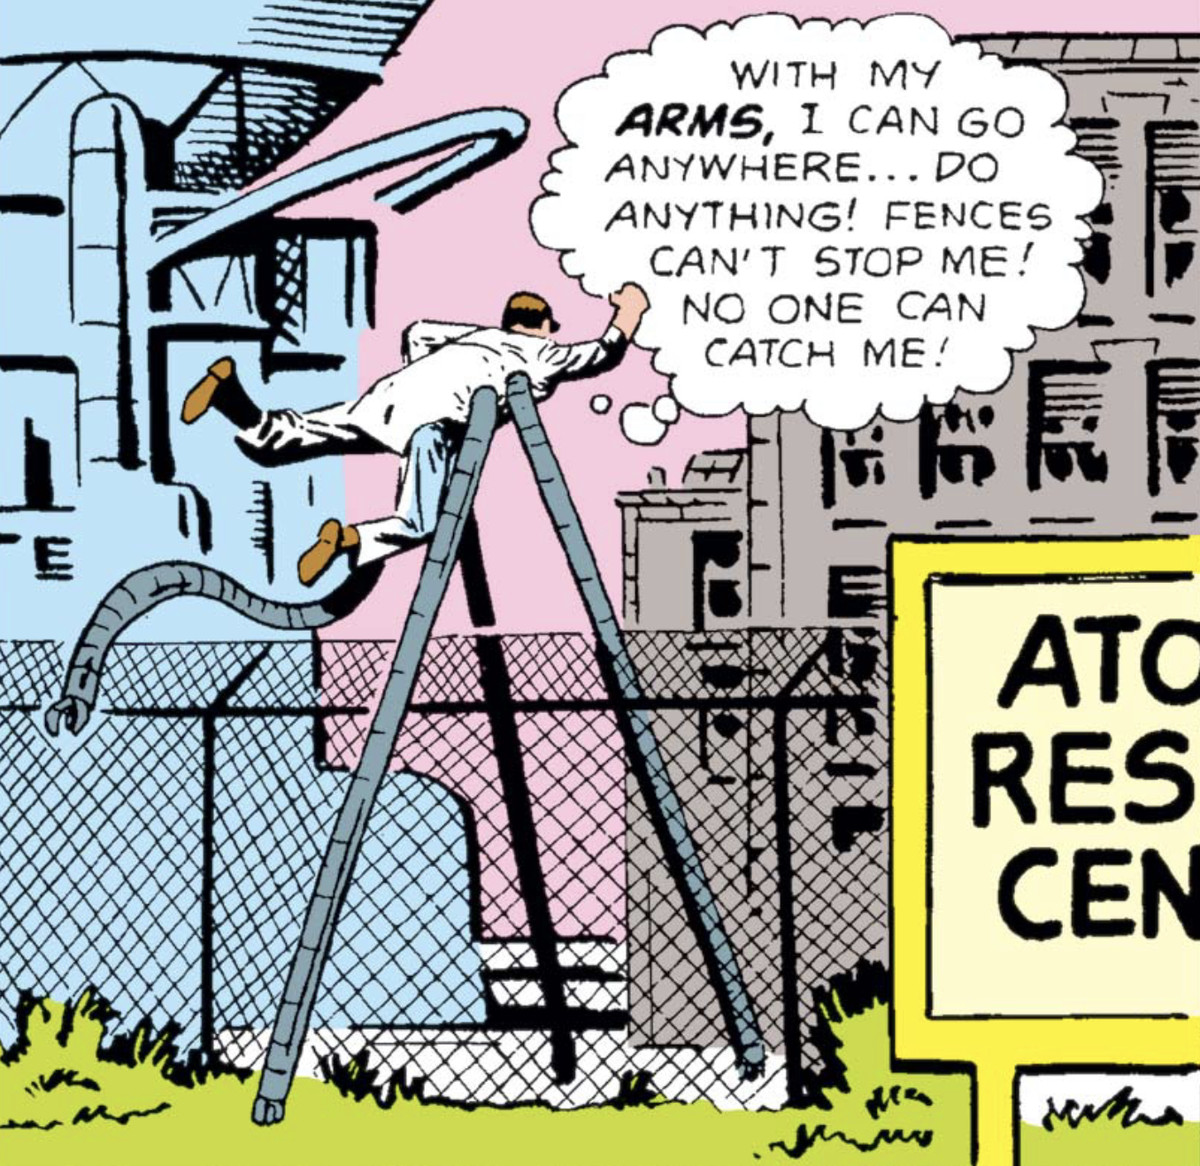 Fumetti di Spider-Man - Il dottor Octopus si lancia da un'alta recinzione in un centro scientifico.  Pensa: “Con le mie braccia posso andare ovunque... fare qualsiasi cosa!  Le recinzioni non possono fermarmi!  Nessuno può prendermi!